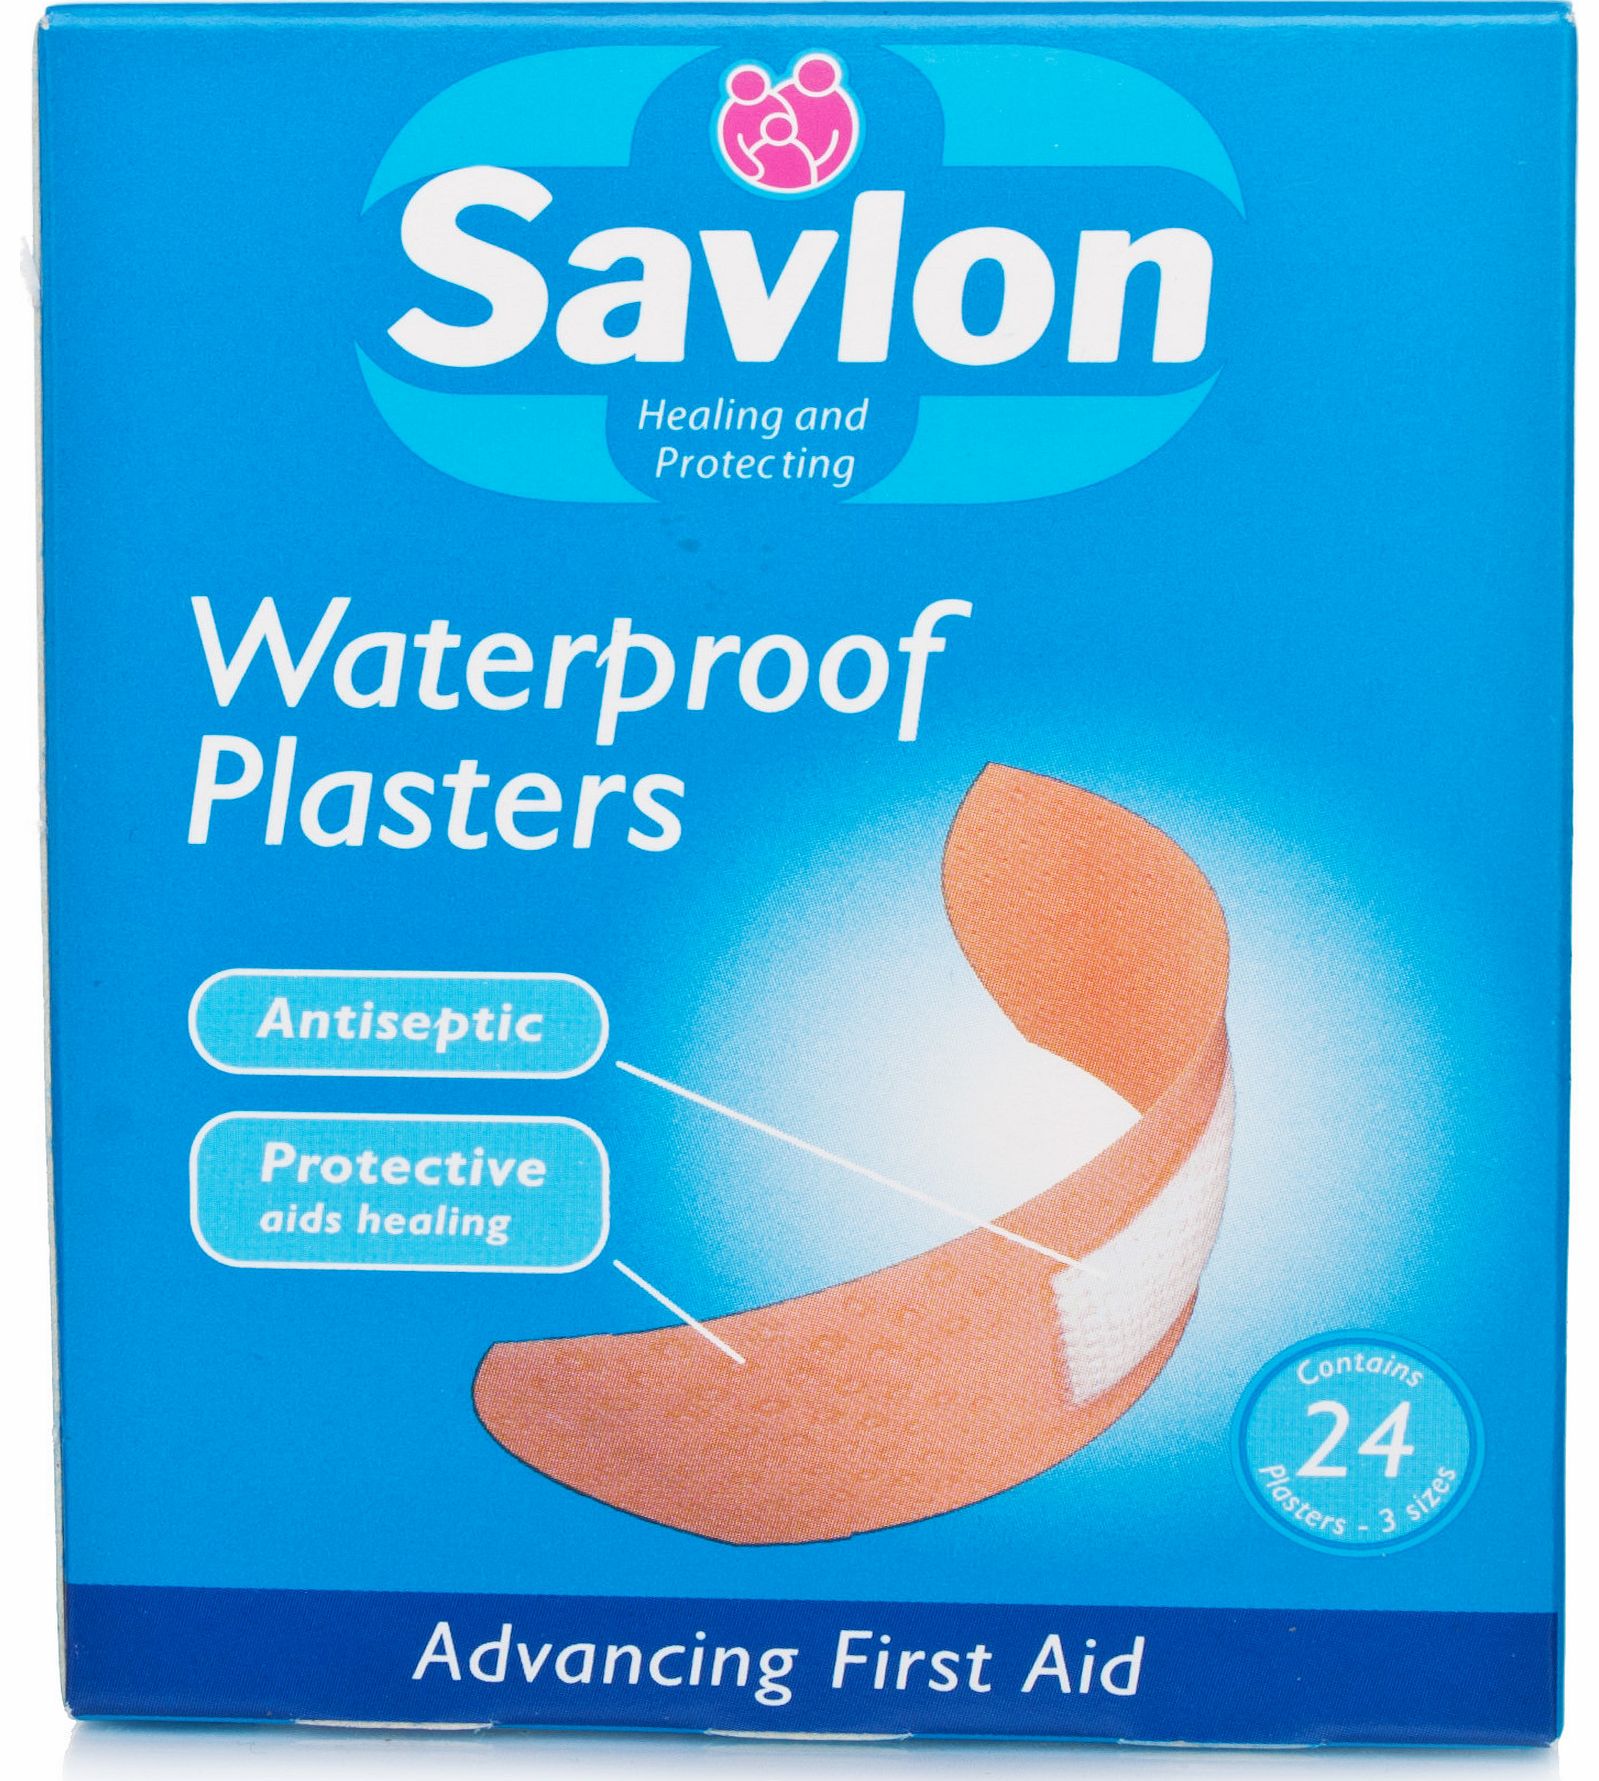 Waterproof Plasters